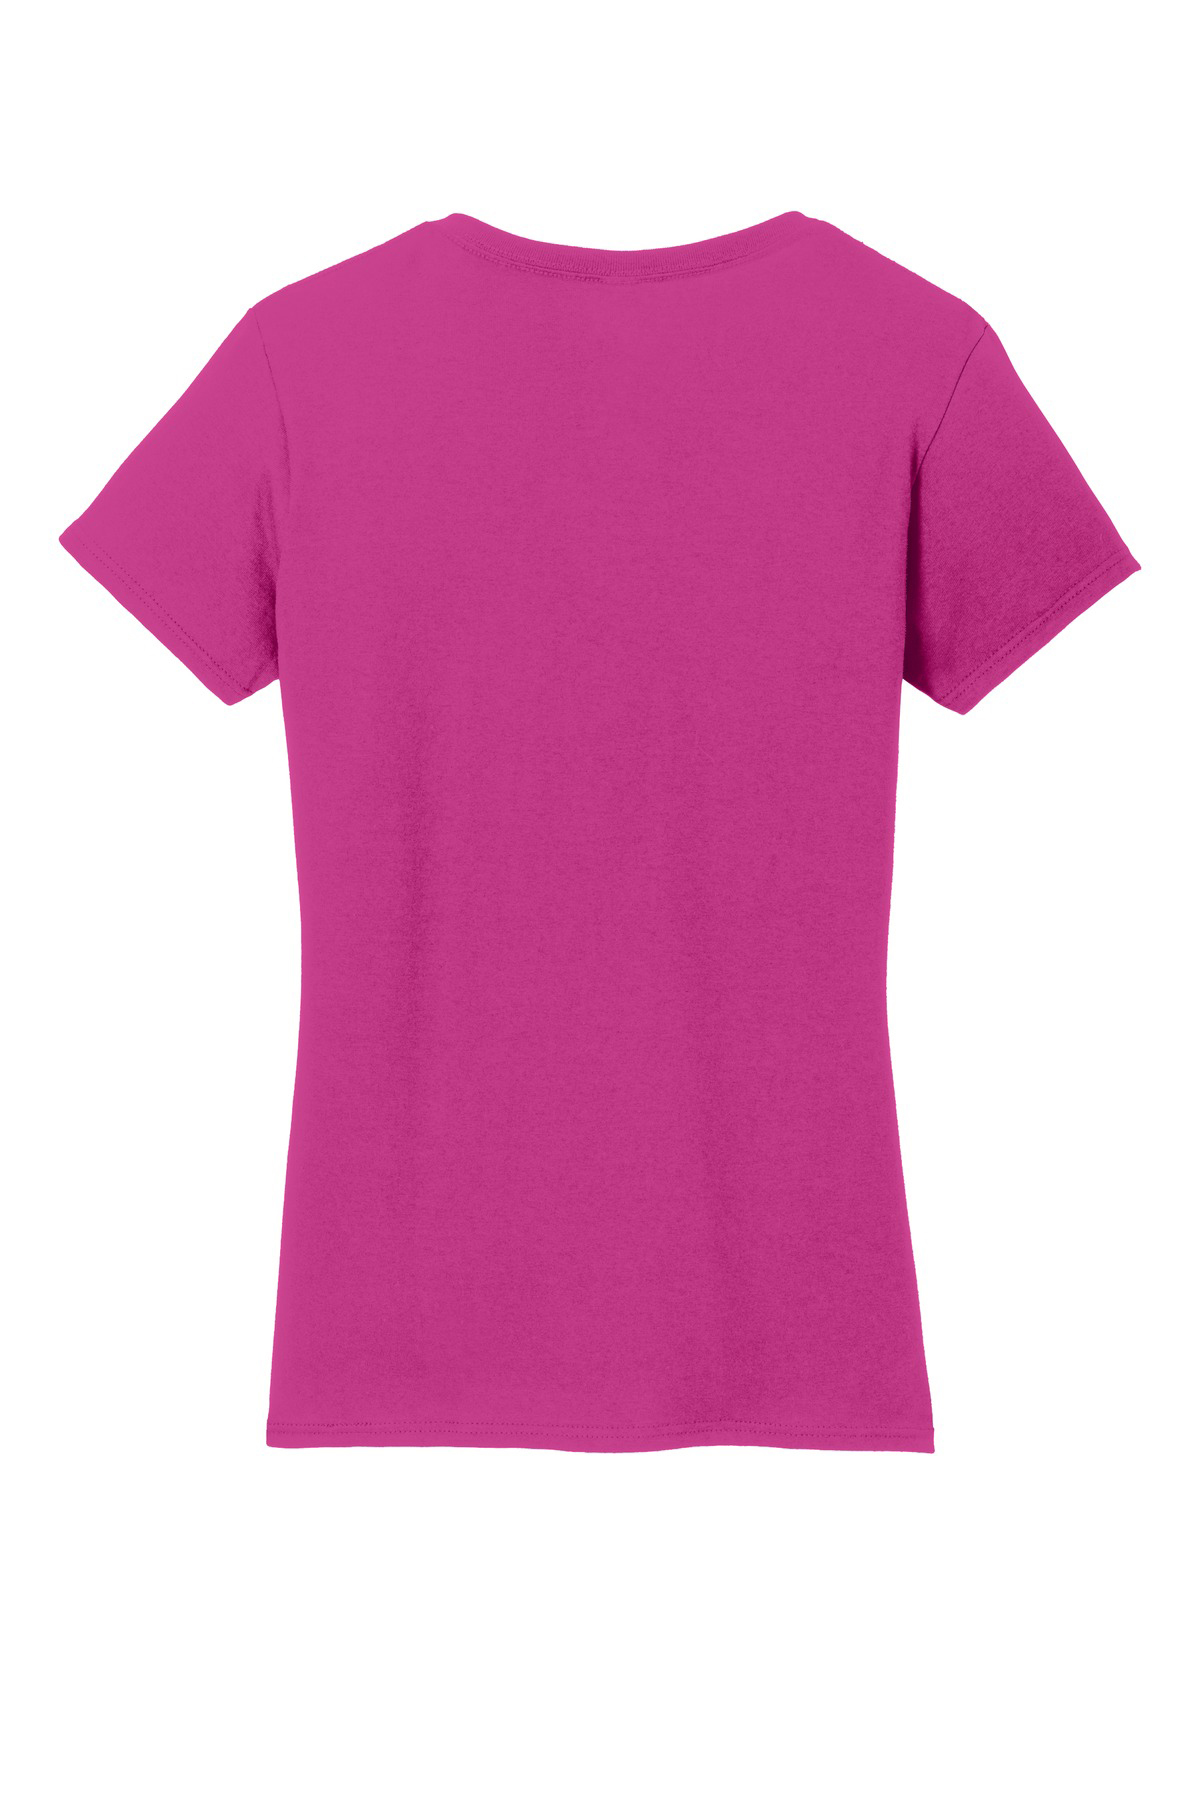 Gildan Ladies Heavy Cotton 100% Cotton V-Neck T-Shirt | Product ...